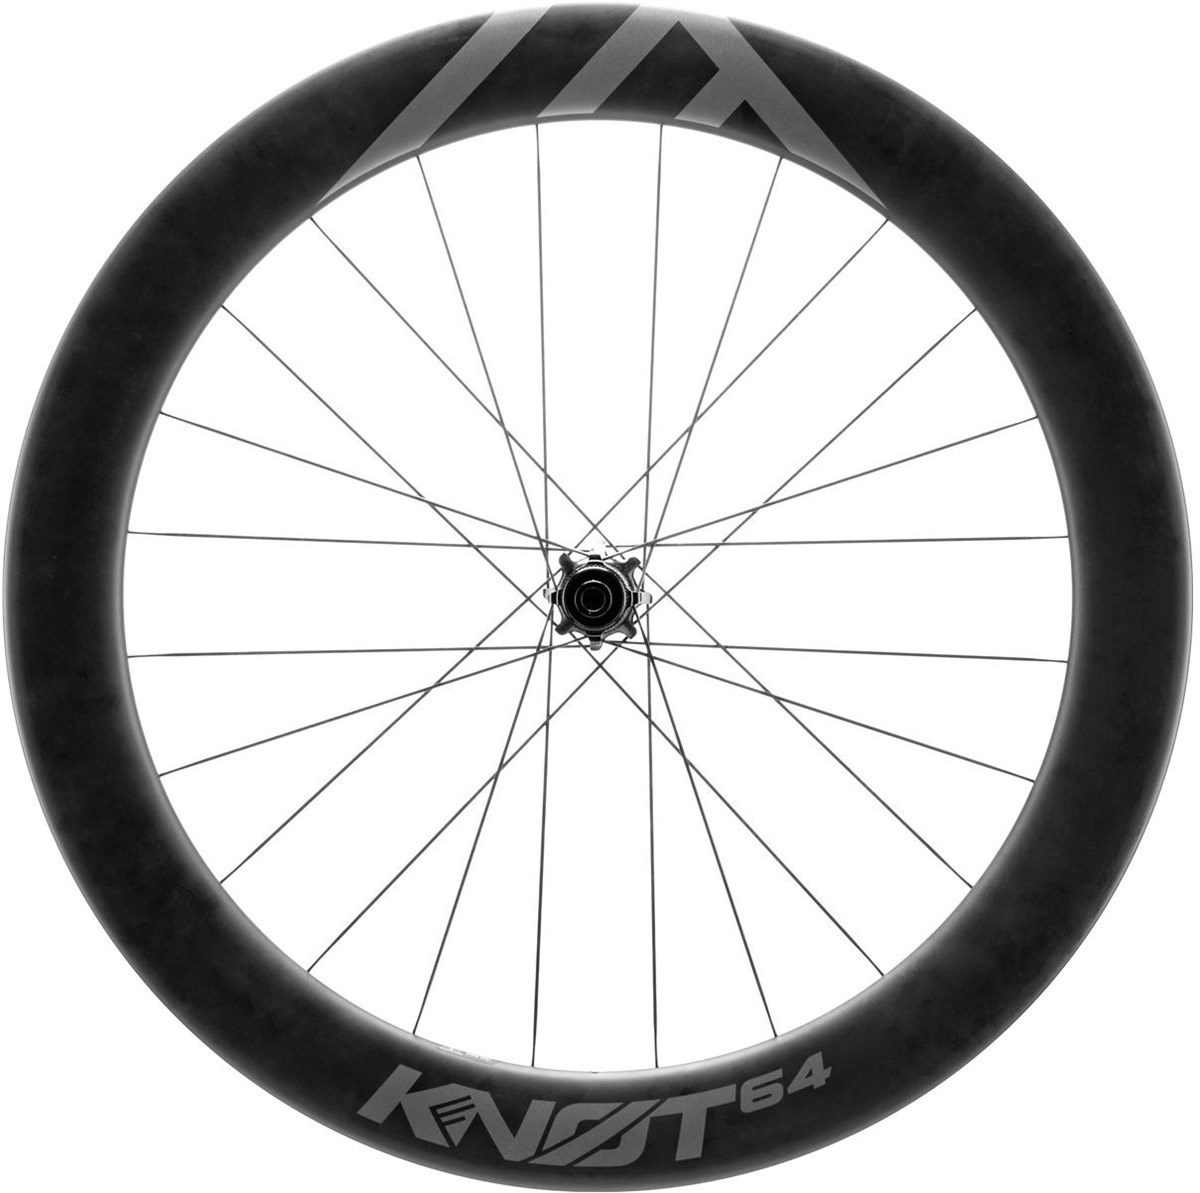 Cannondale KNØT 64 Disc Carbon Rear Wheel product image